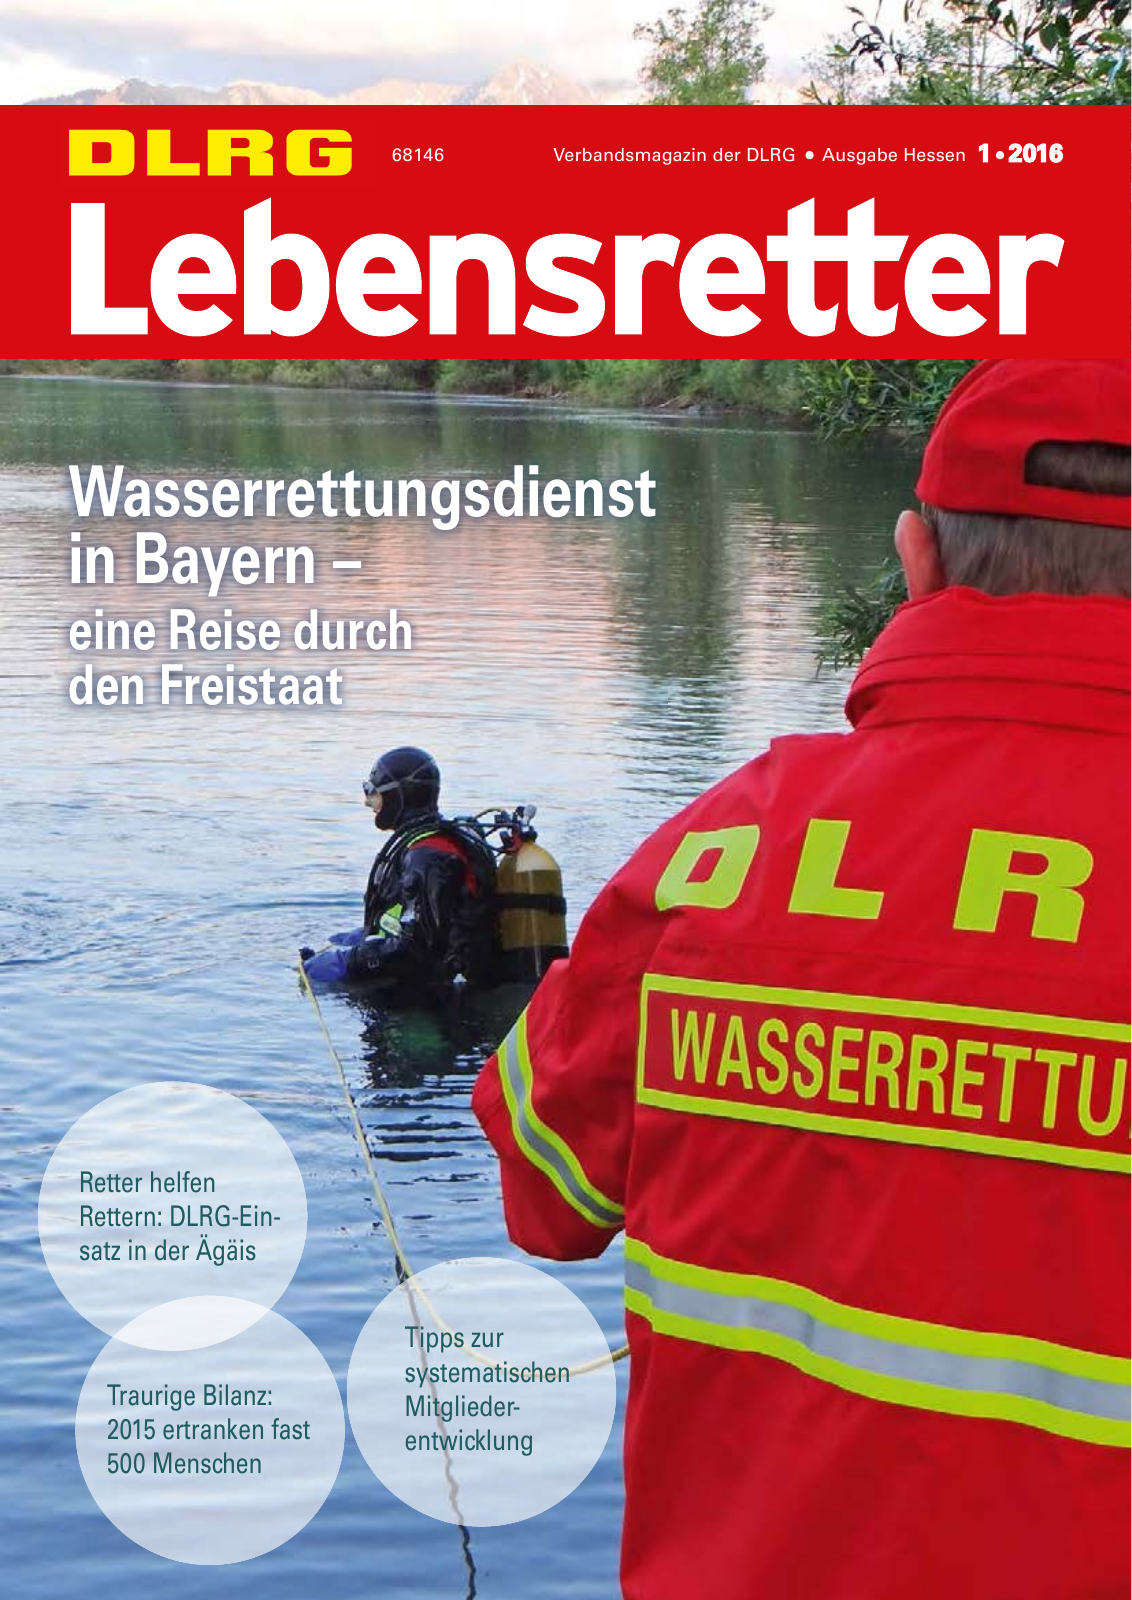 Vorschau Lebensretter 1/2016 - Regionalausgabe Hessen Seite 1